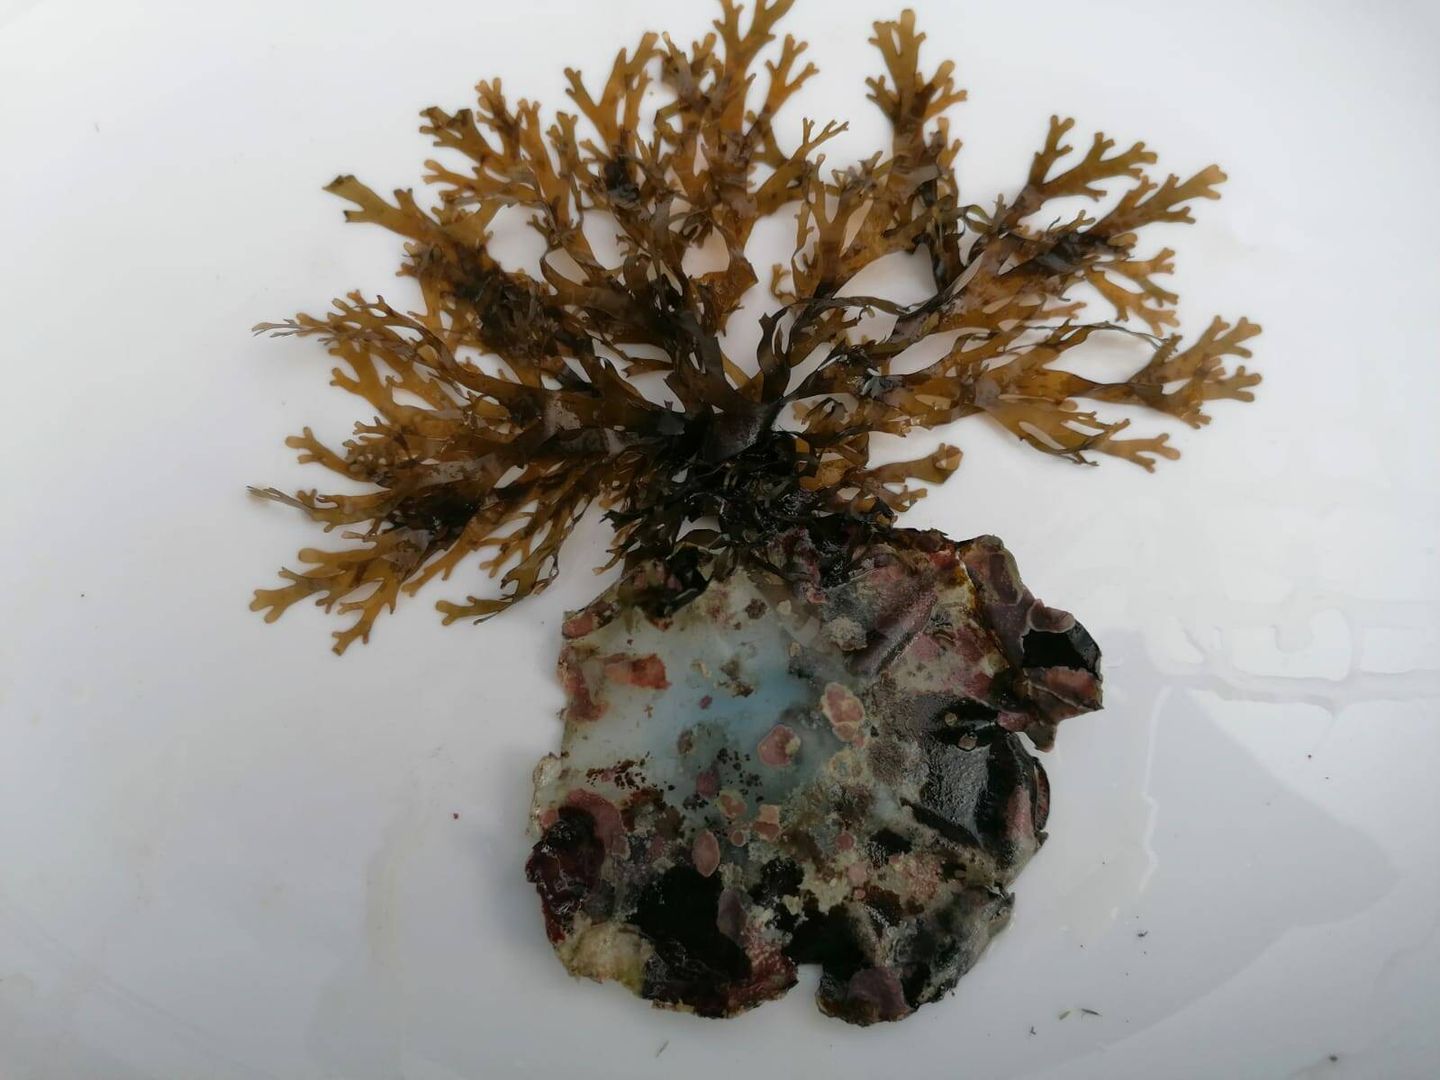 La capacidad de adaptación al medio del alga invasora es muy alta. En la imagen, el alga fijada a un fondo de plástico, en una imagen tomada en Roquetas de Mar. (Félix López)